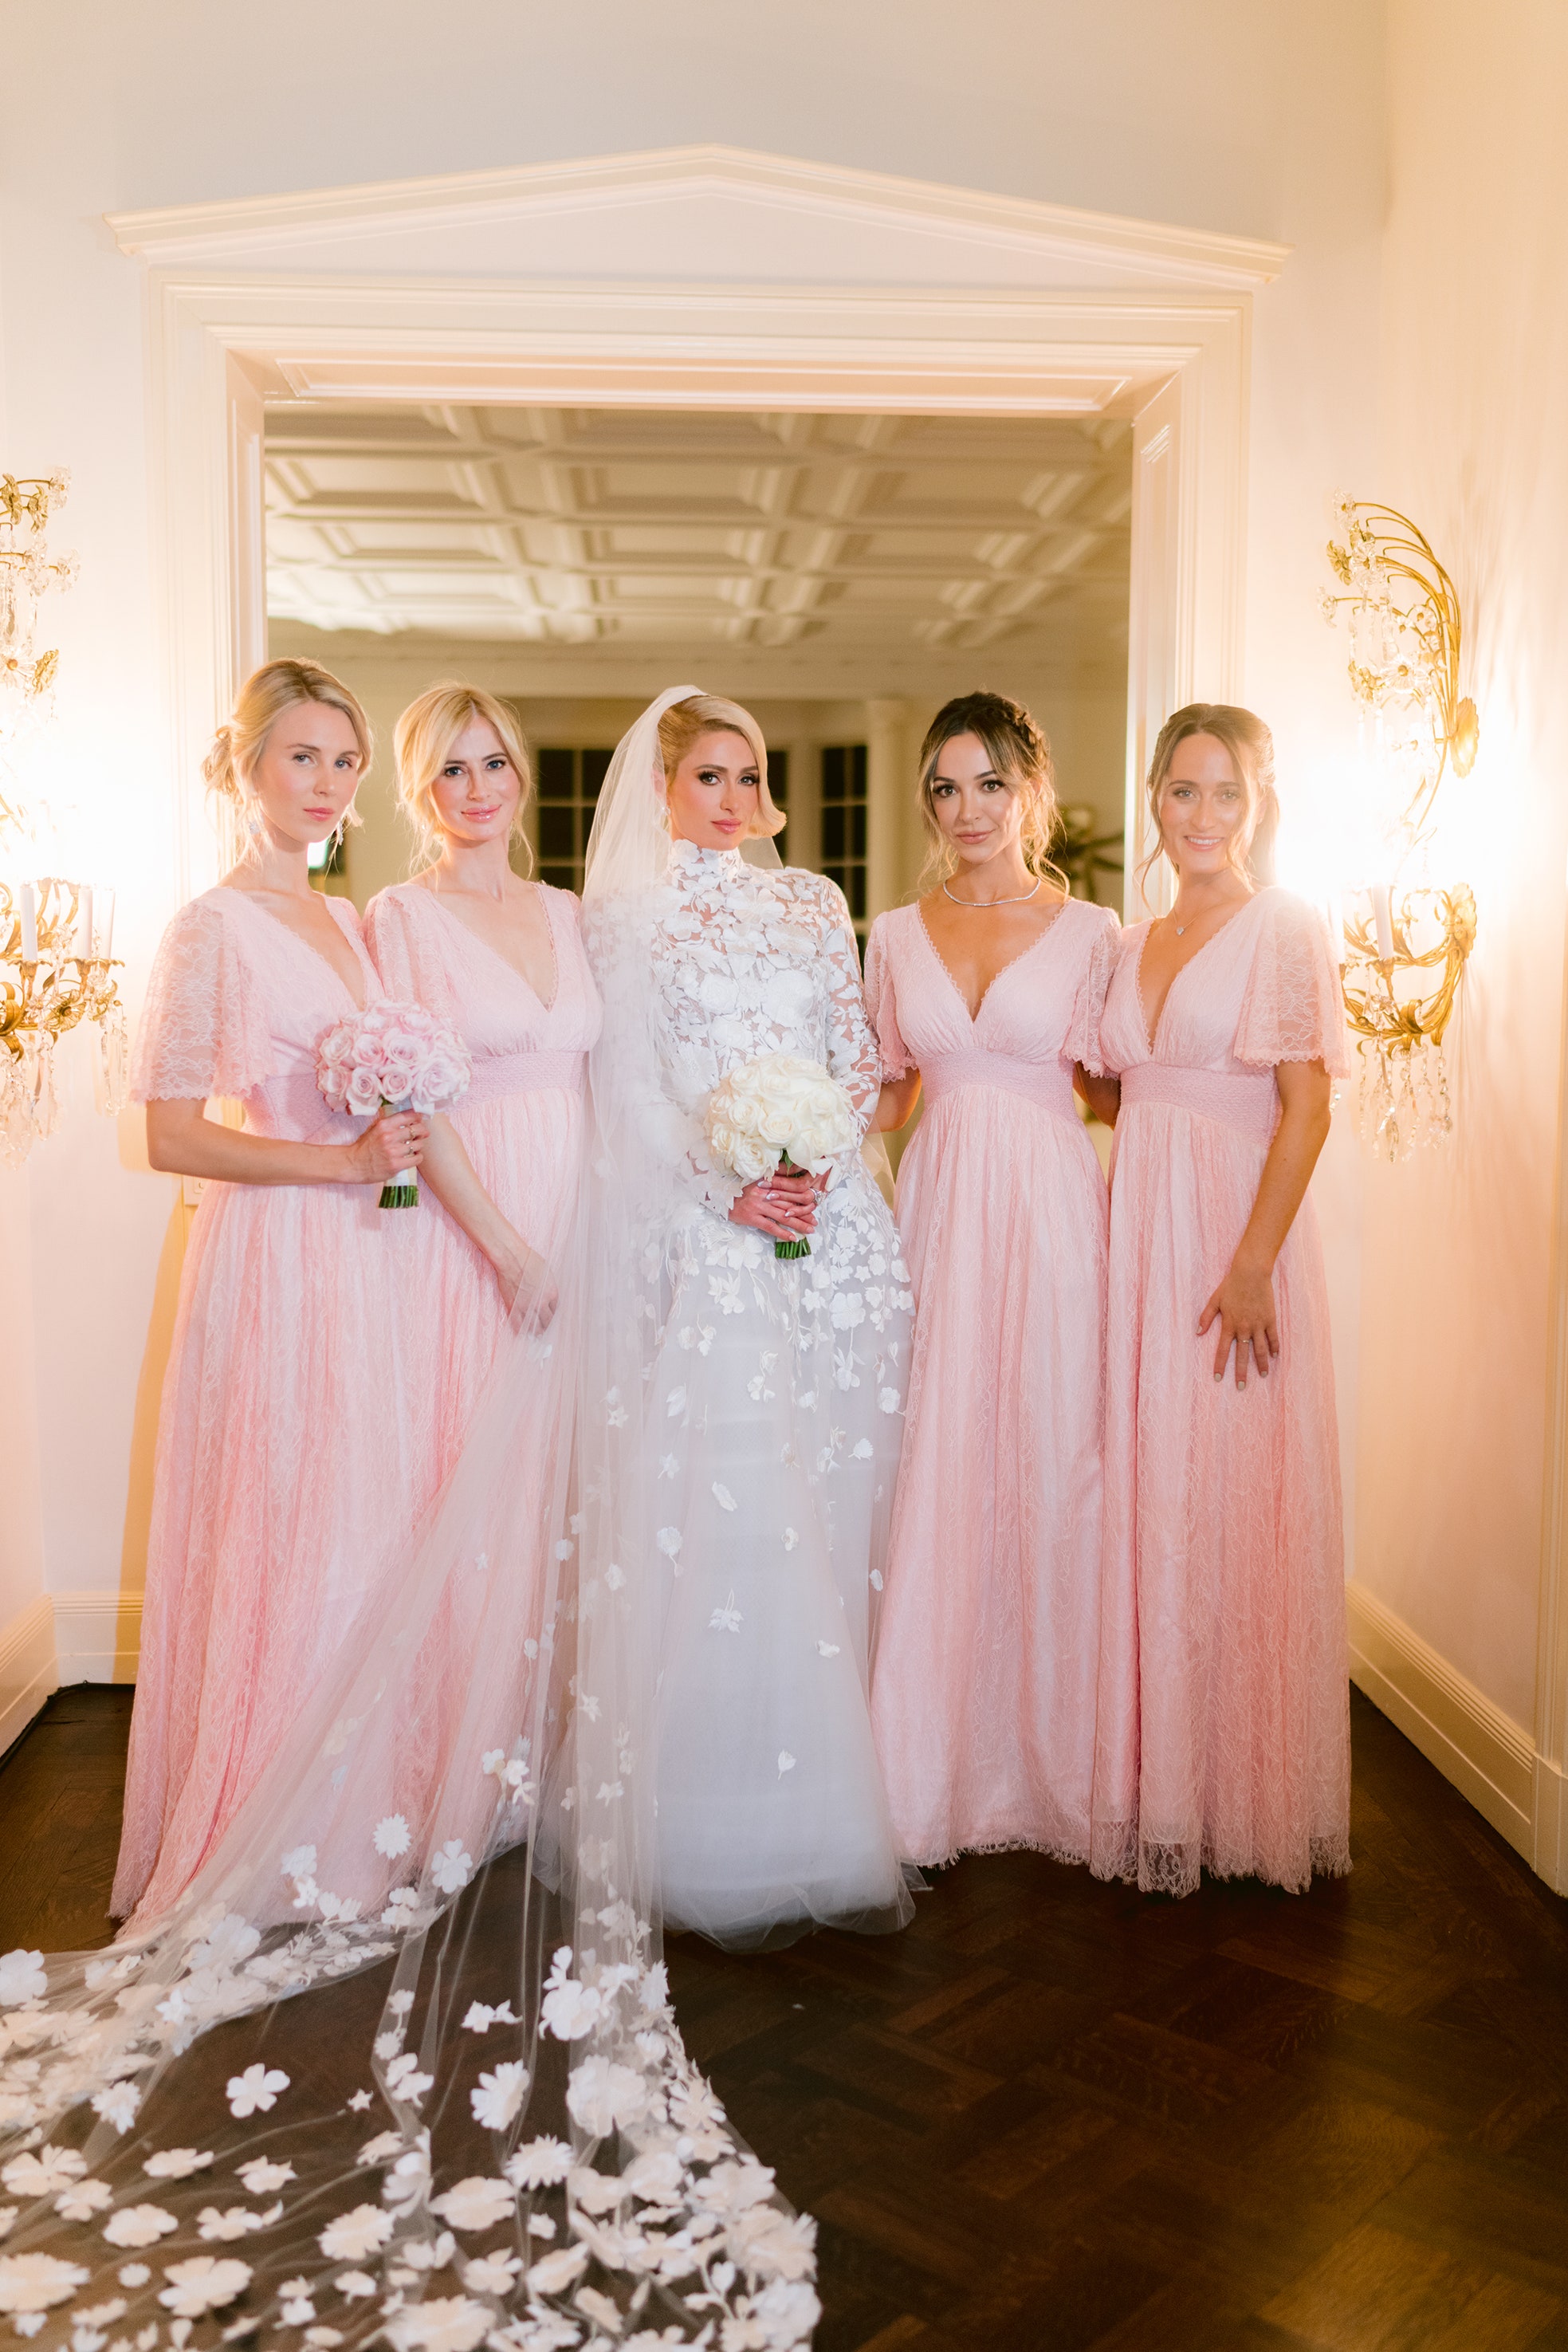 Cận cảnh 4 bộ váy cưới xa hoa trong hôn lễ Paris Hilton: Chỉ có duy nhất 1 bộ là kín đáo, còn lại đều theo style căng cực - Ảnh 7.